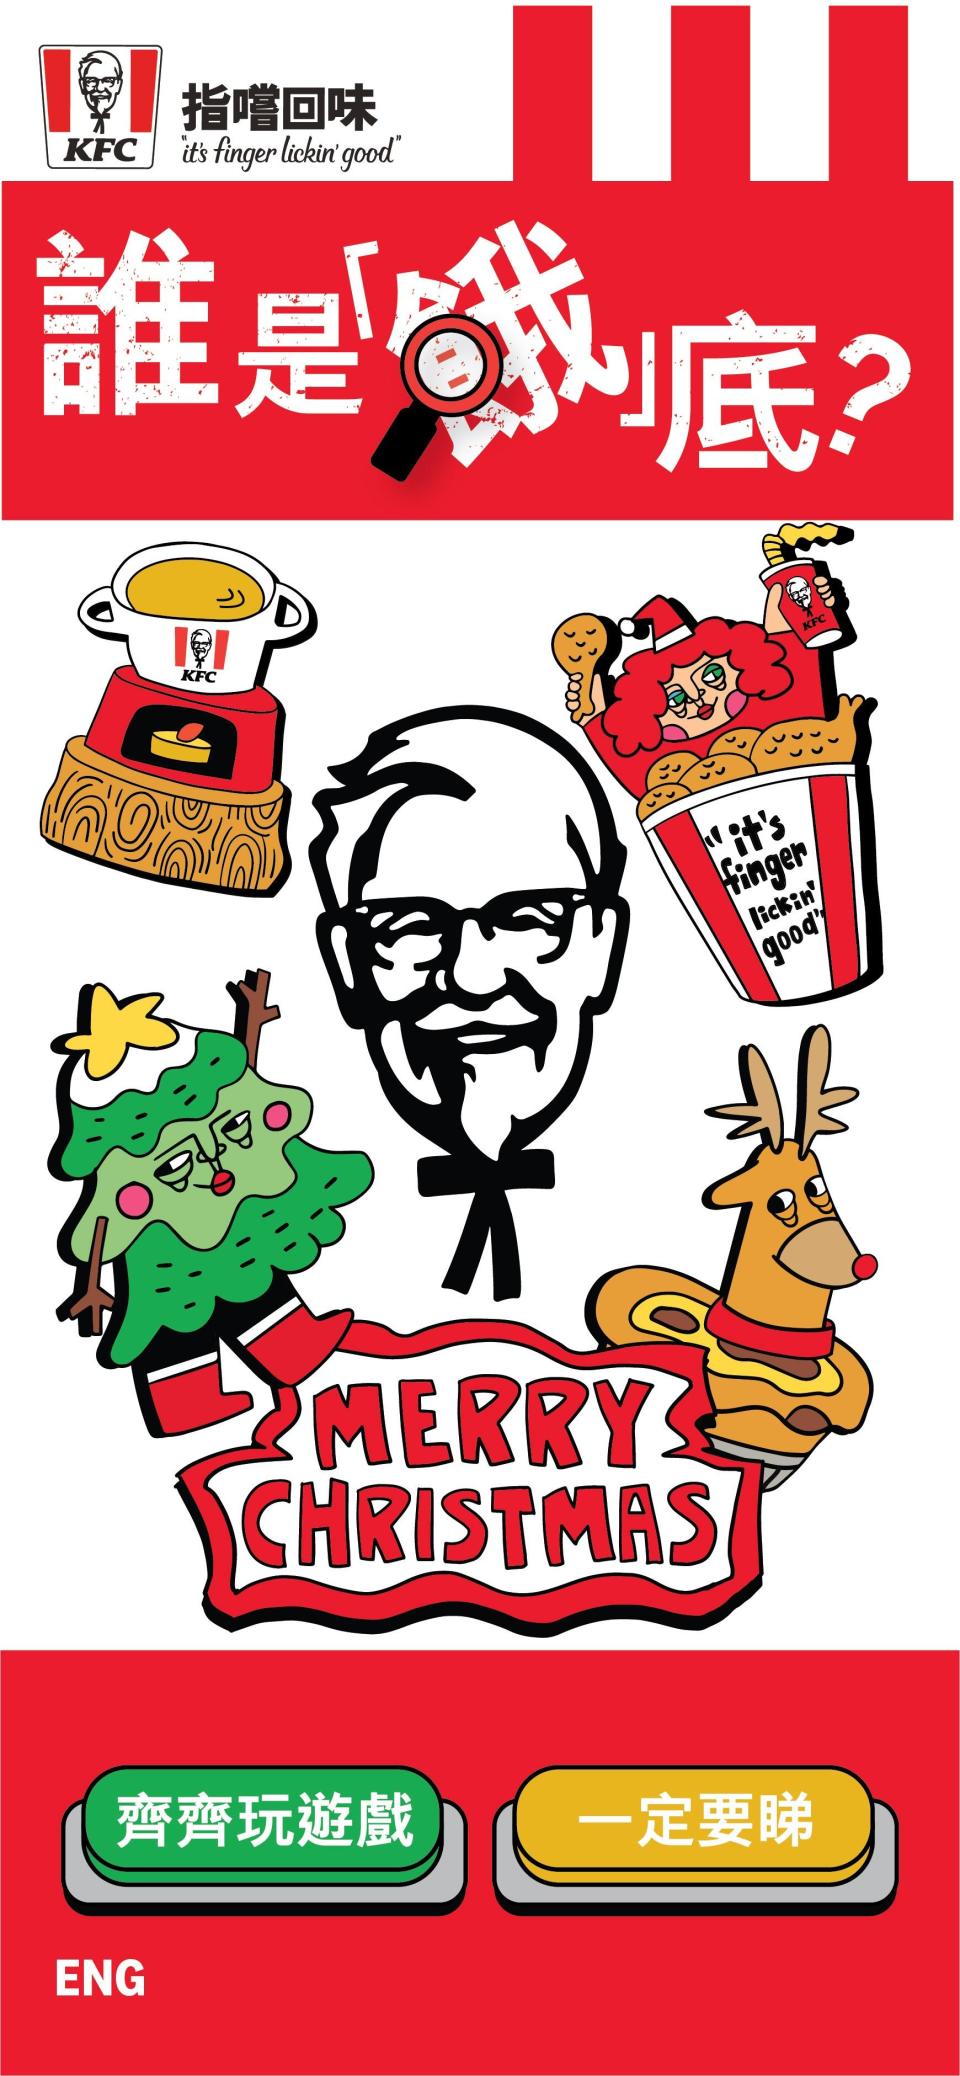 KFC更於12月1日推出線上遊戲「誰是餓底?」